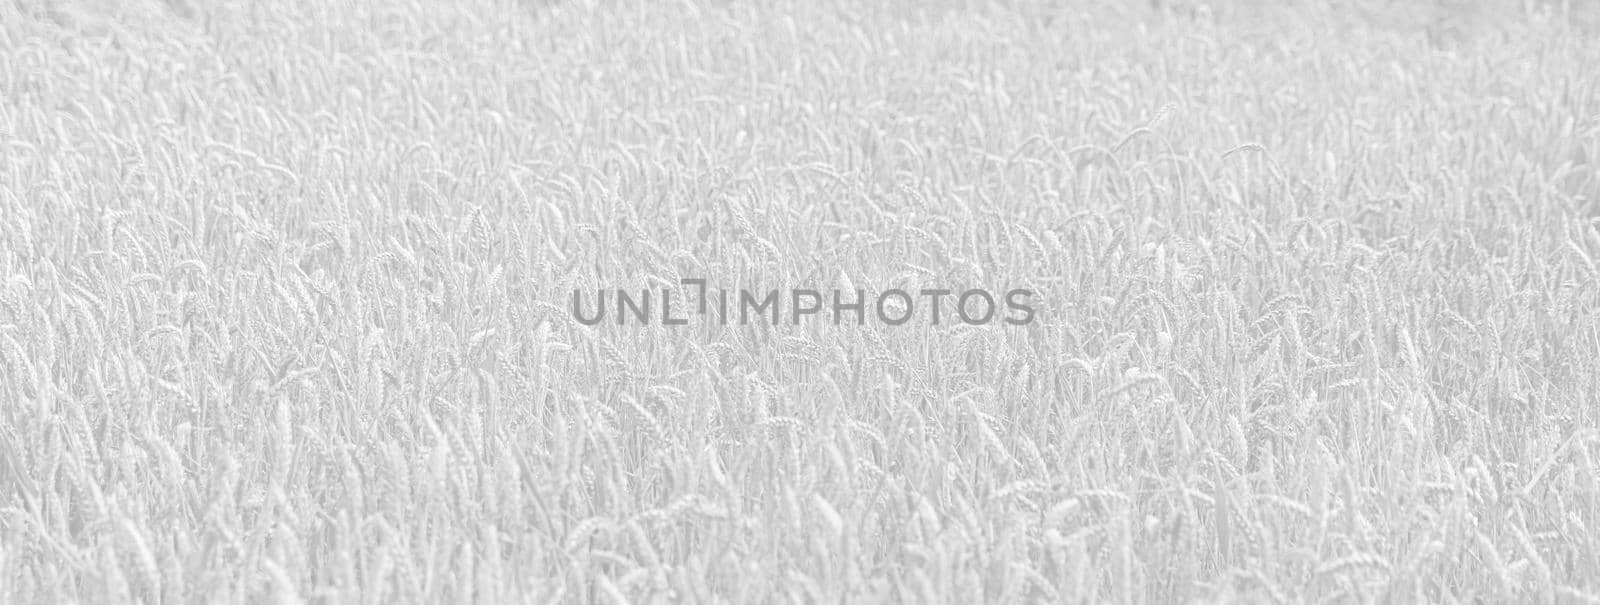 Golden wheat field by palinchak